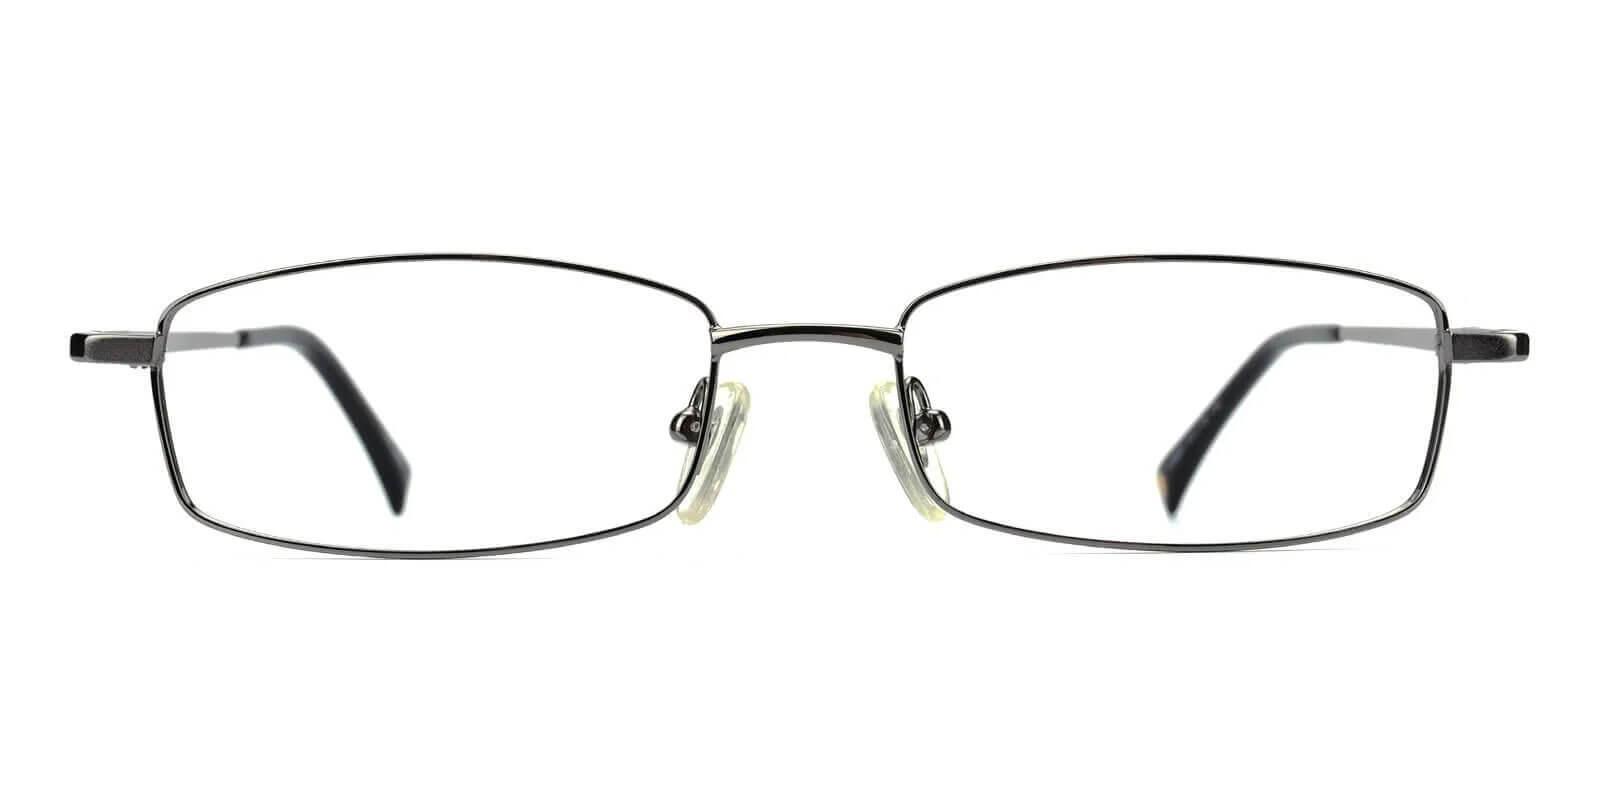 Gihon Gun Metal Eyeglasses , NosePads Frames from ABBE Glasses